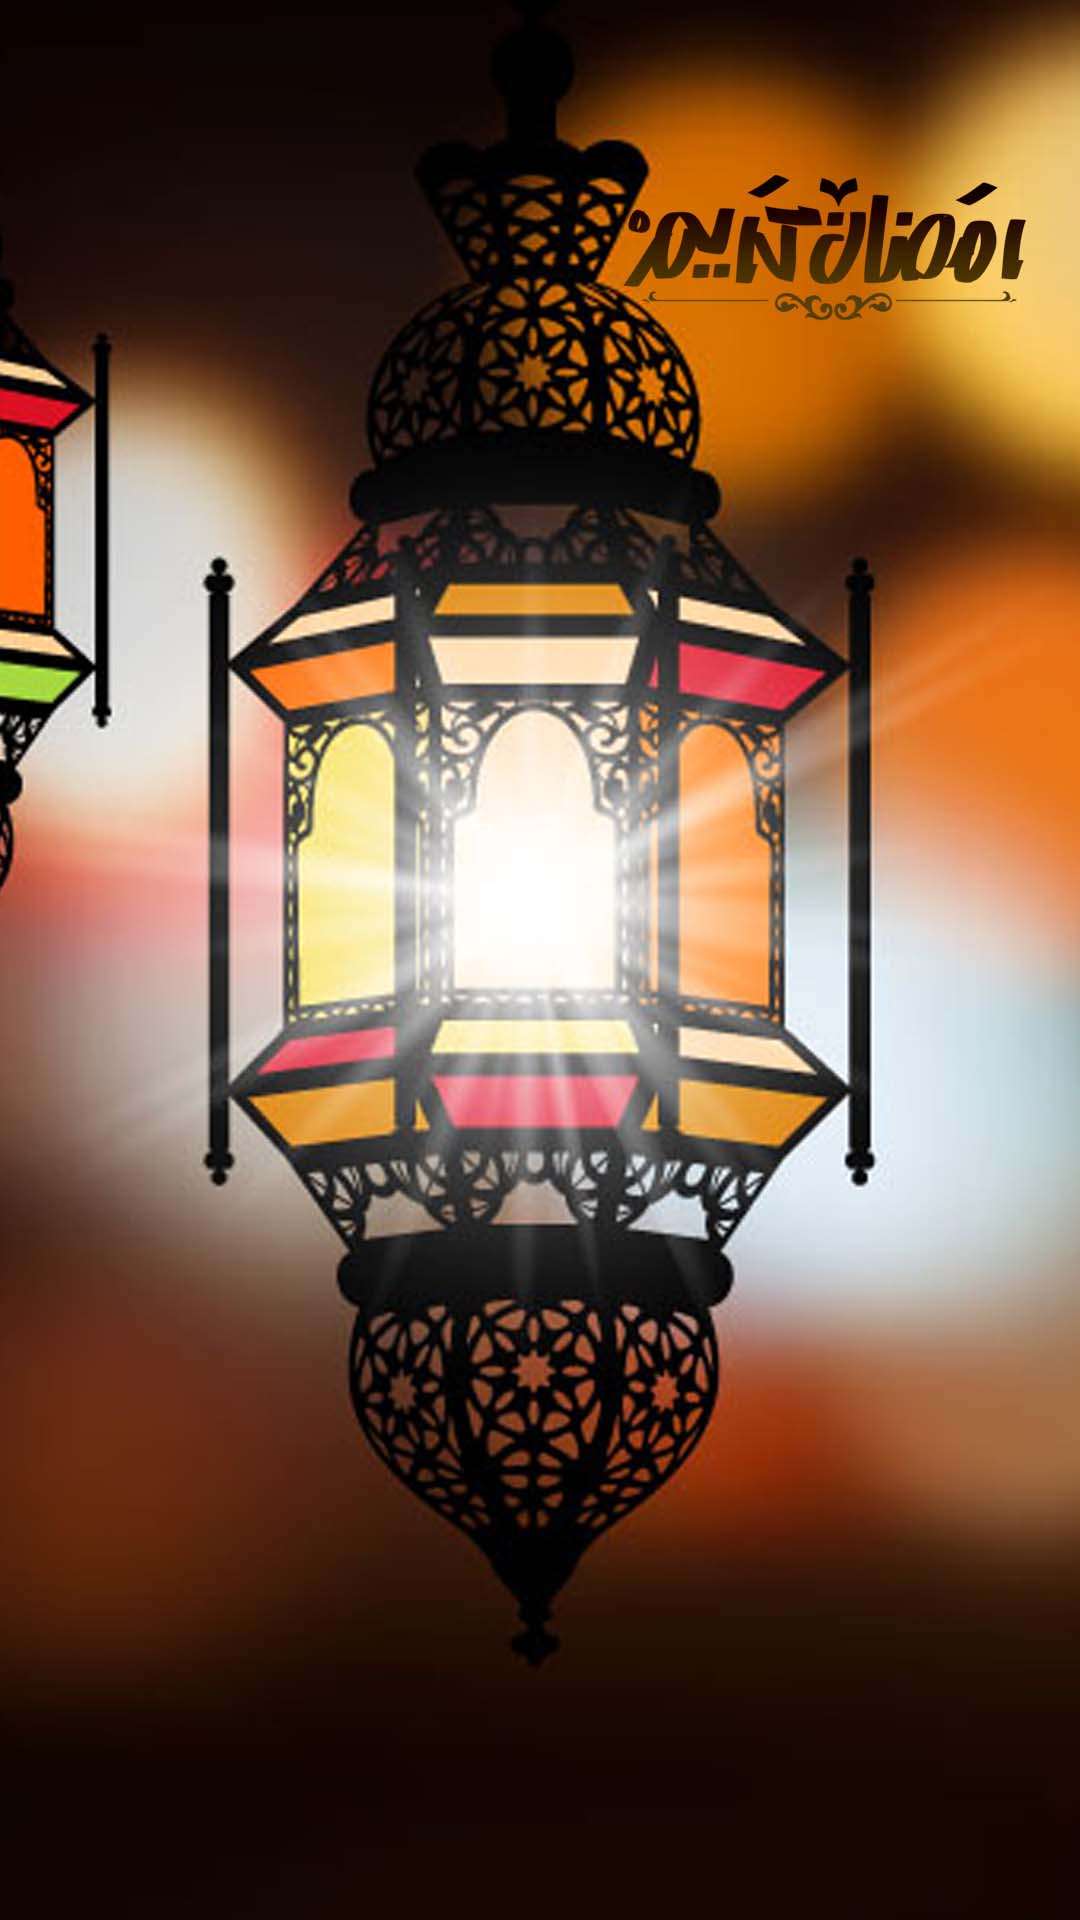 اجمل خلفيات الموبايل بمناسبه شهر رمضان 2020 15